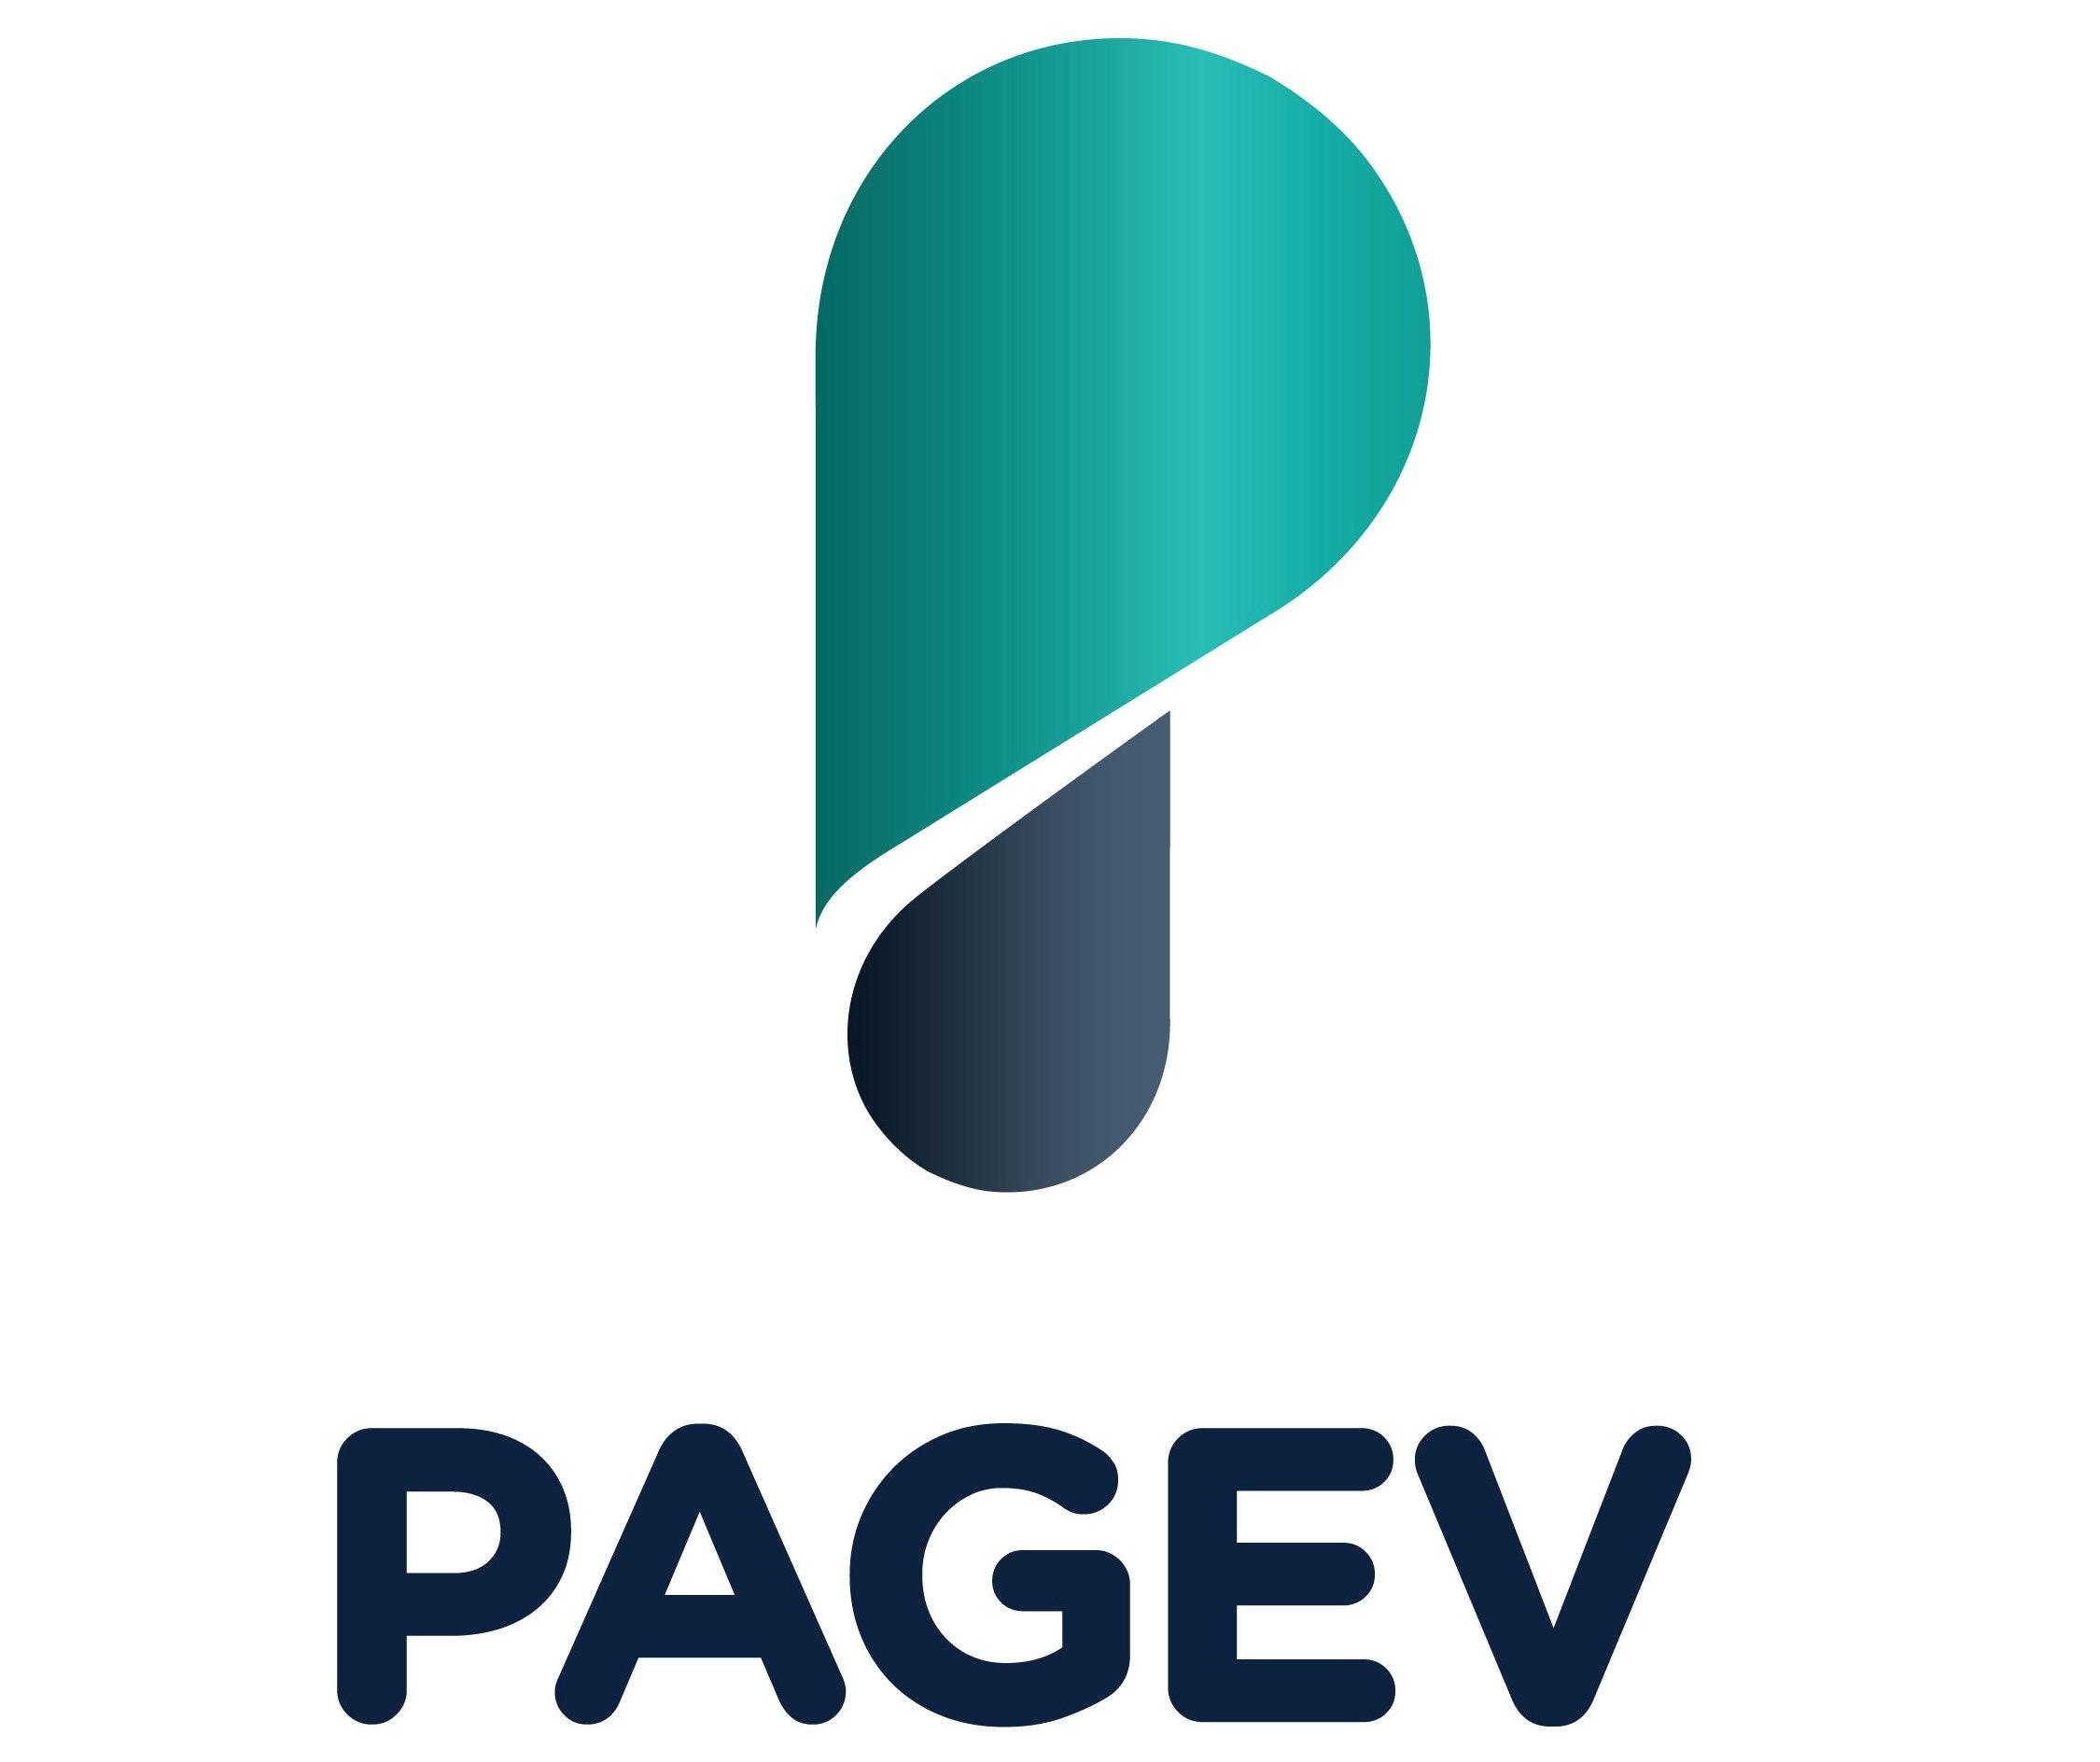 Pagev